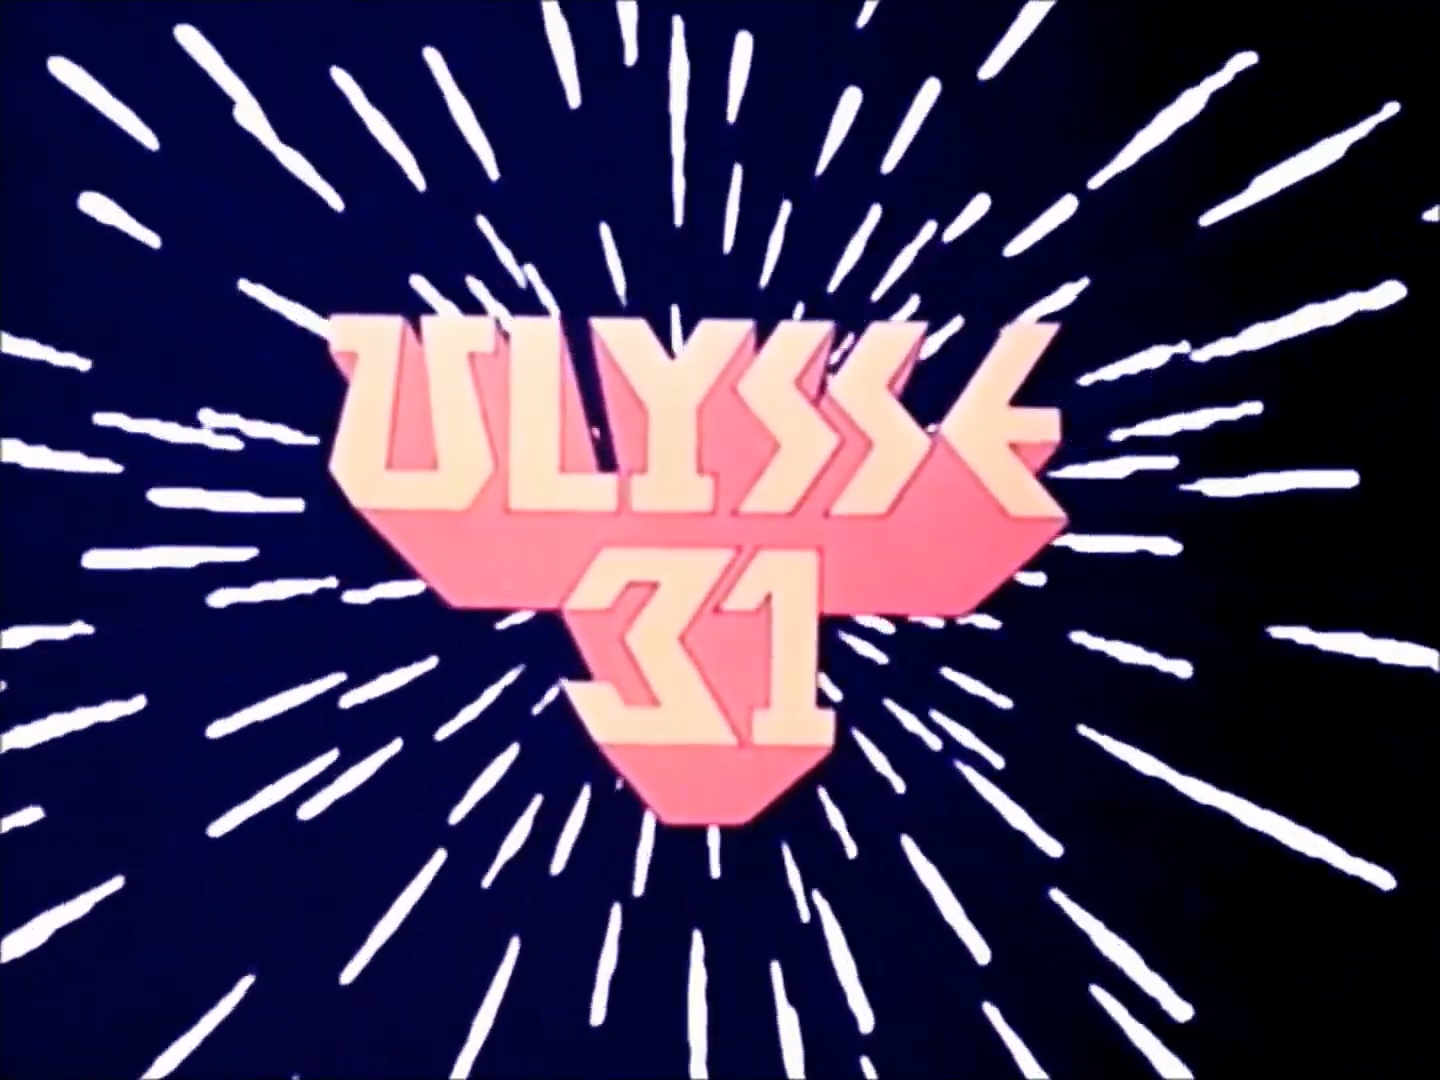 Ulysse 31 (1981-1982) (Saison 01): Résumé des épisodes 00 à 05 + Bonus